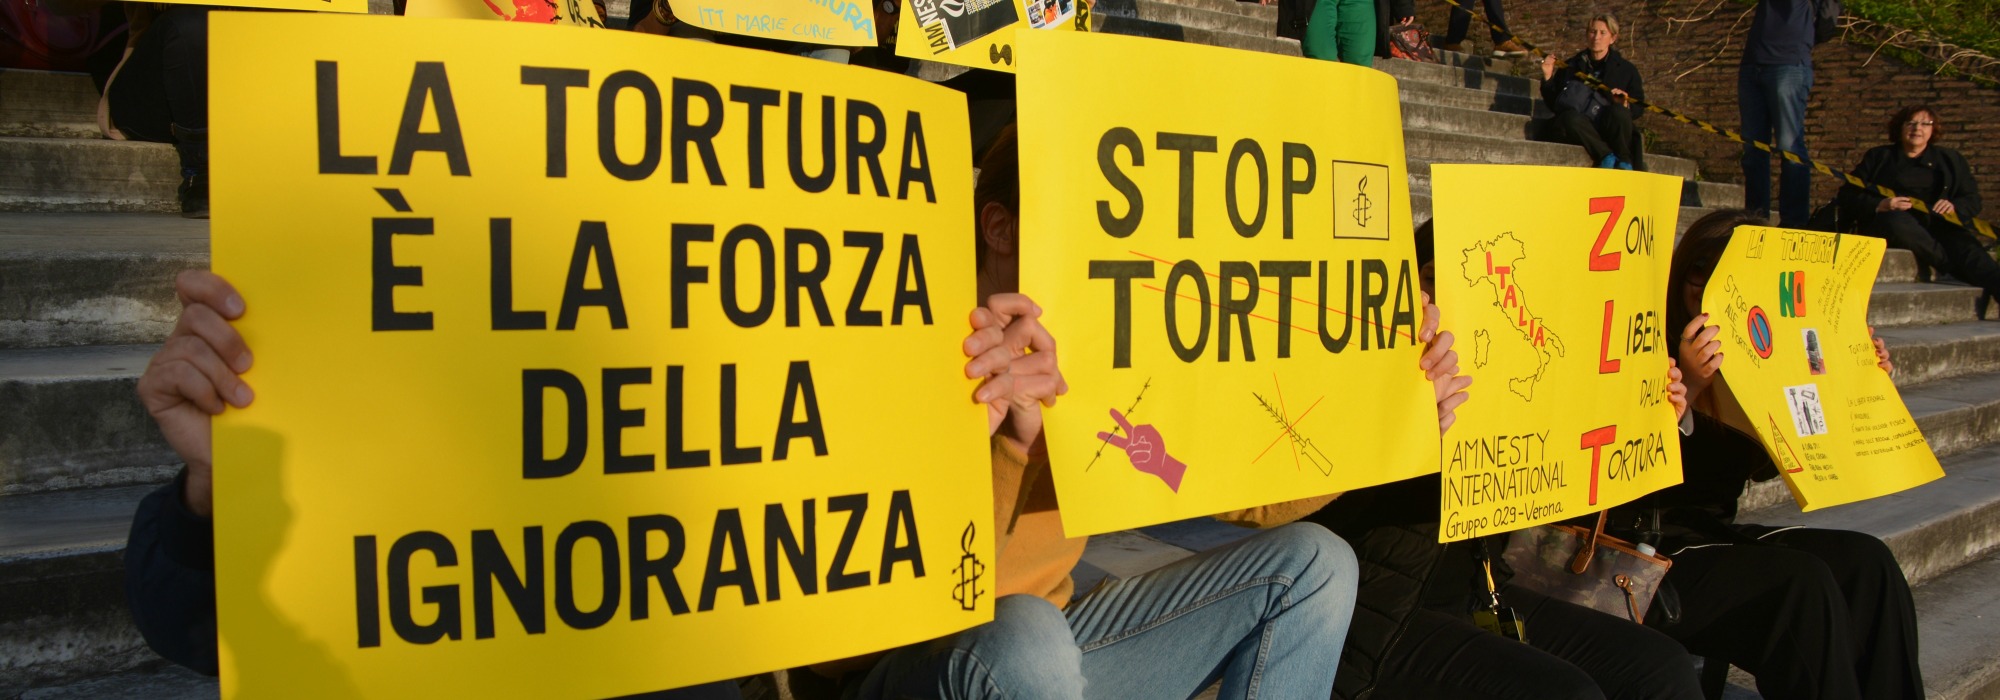 La destra reazionaria vuole abolire il reato di tortura: più abusi per tutti